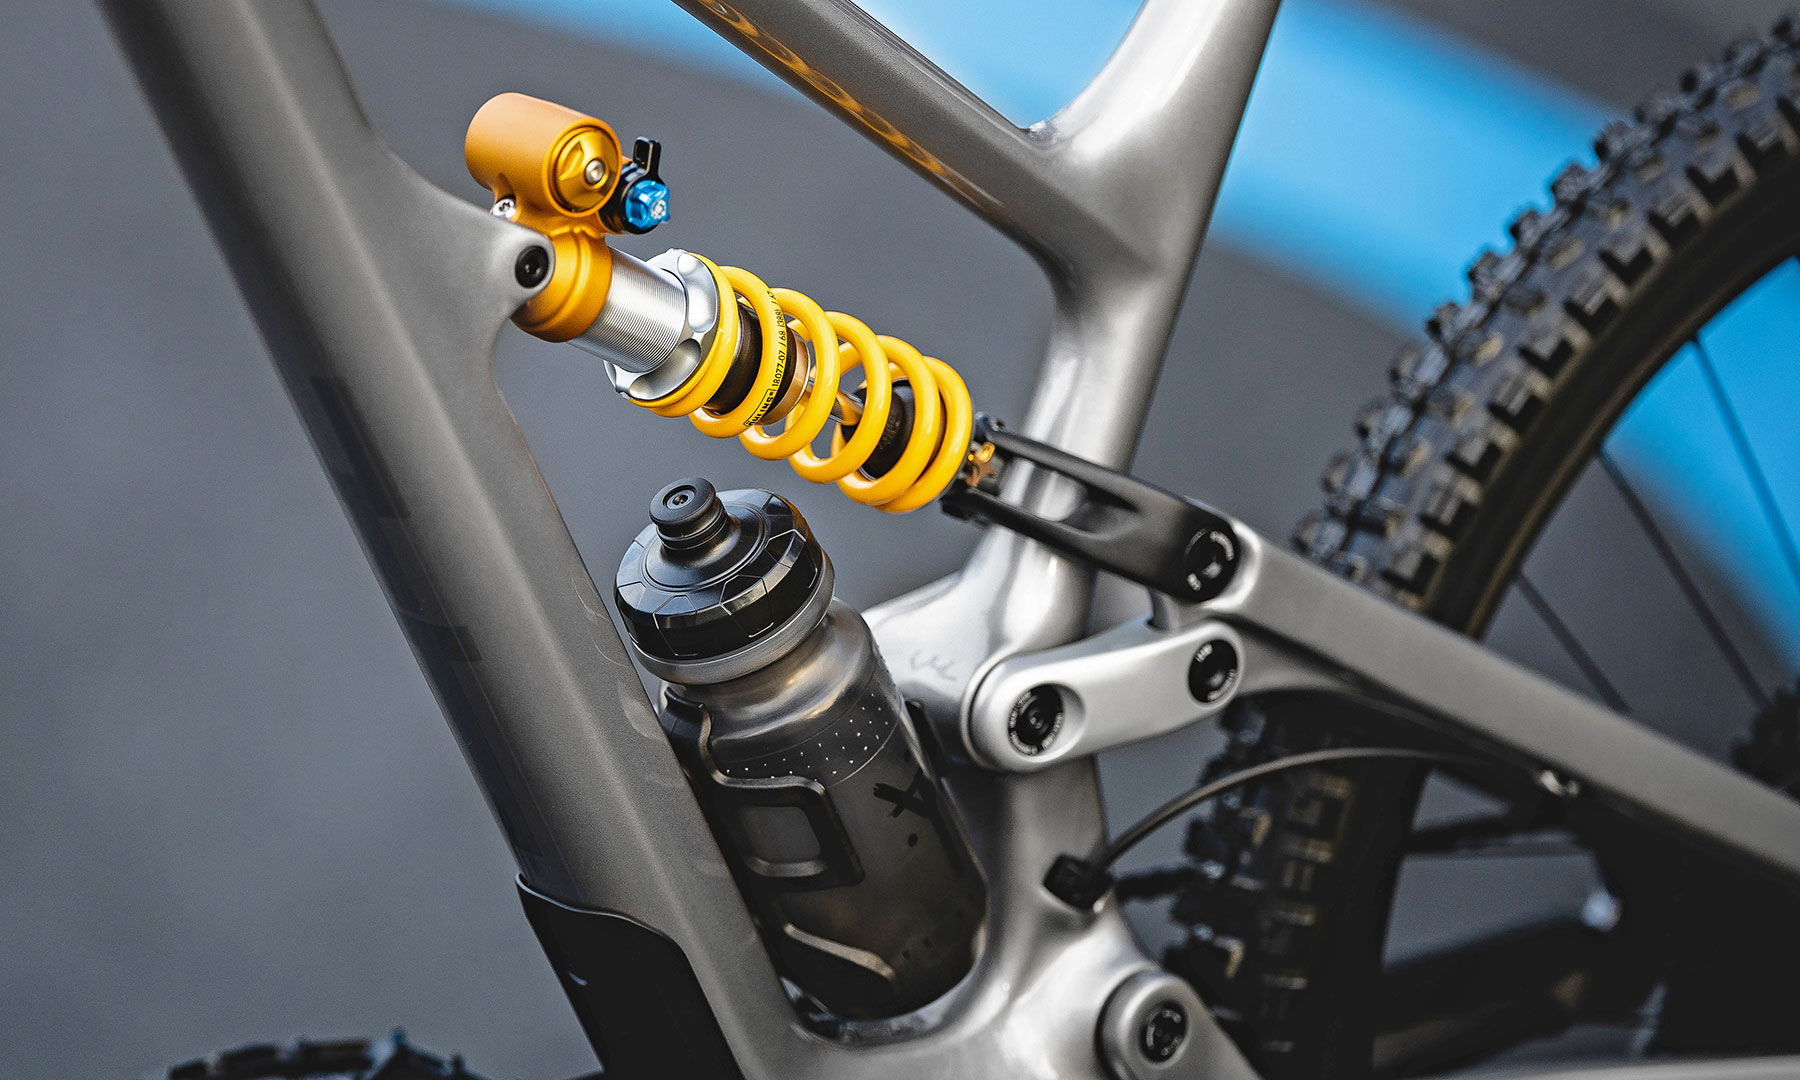 YT Capra Core 5 race-ready carbon enduro bike build with Öhlins coil shock suspension